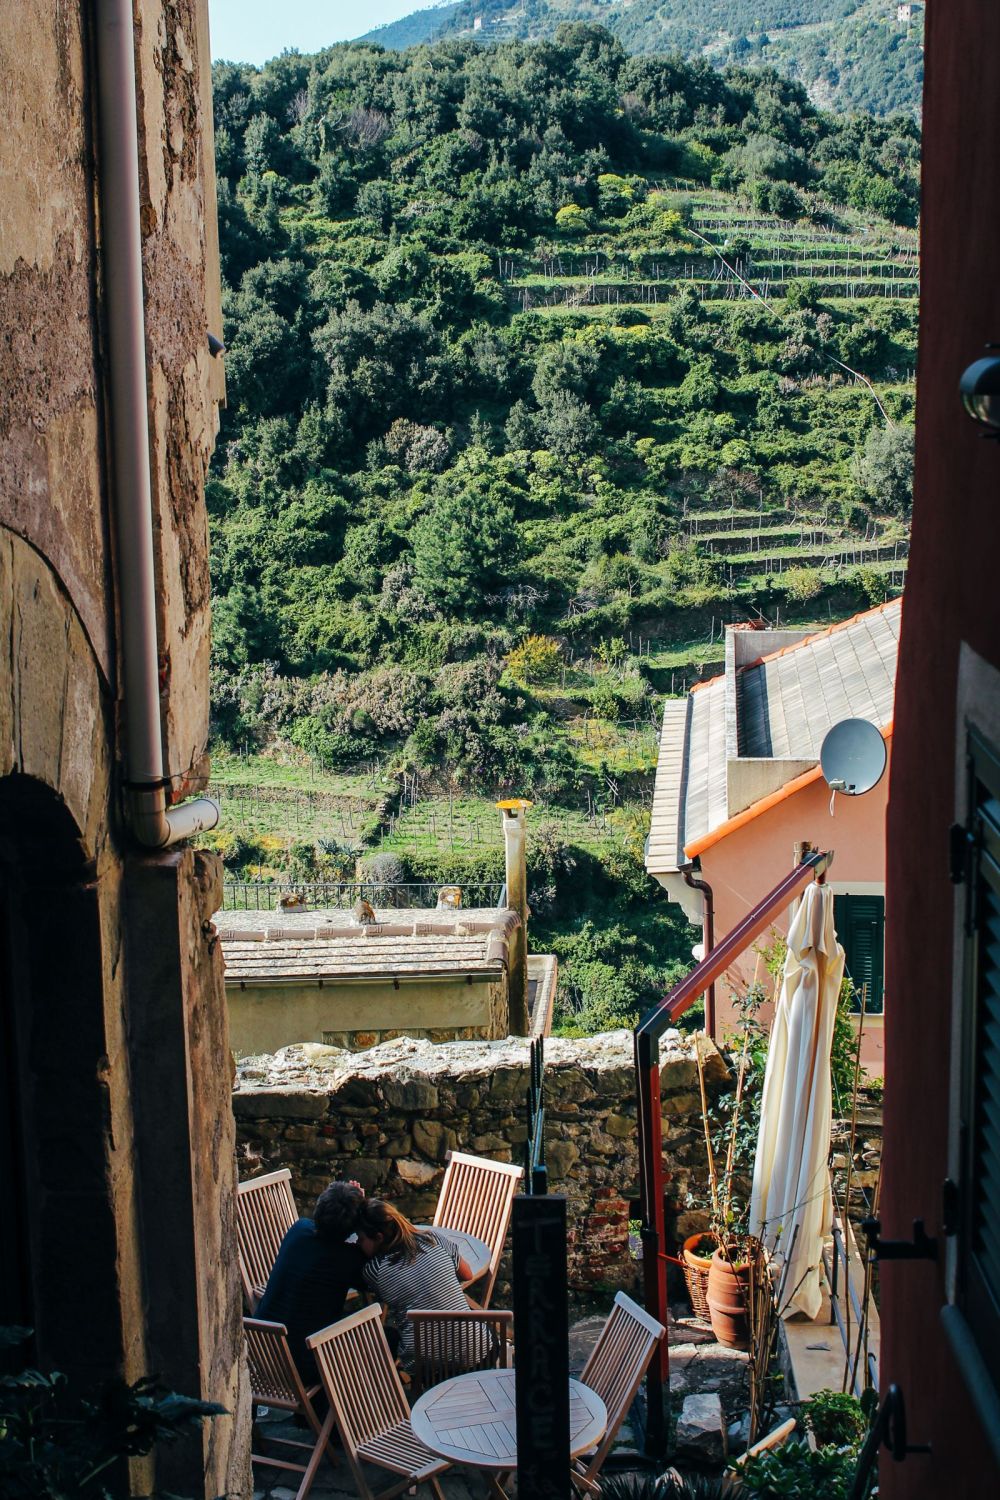 Corniglia in Cinque Terre, Italy - The Photo Diary! [3 of 5] (1)